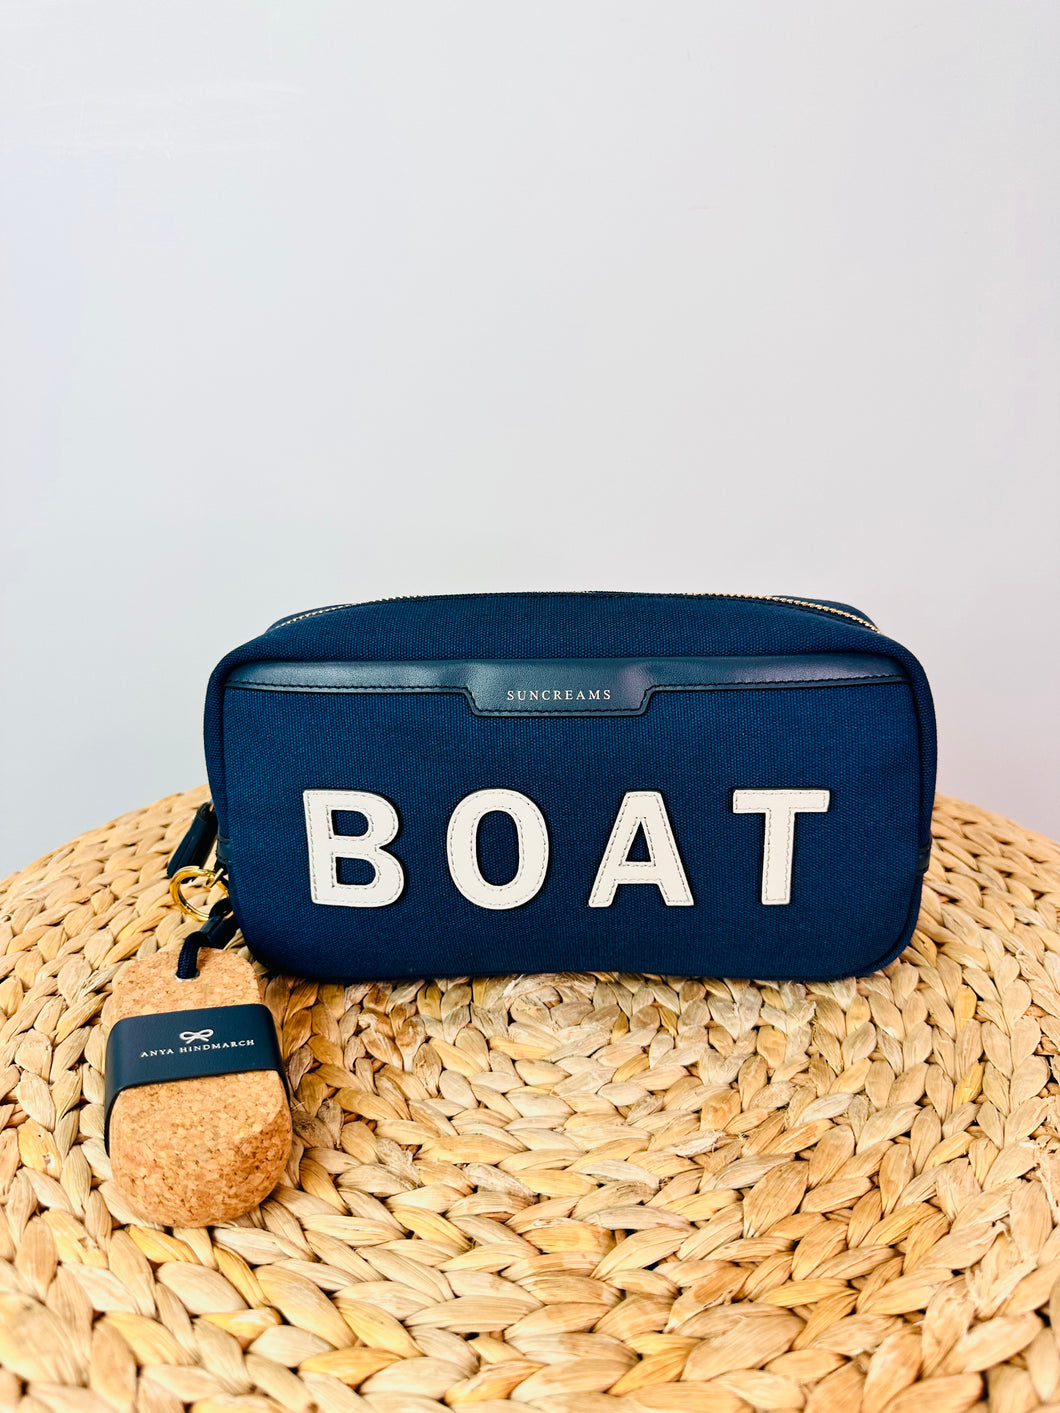 Boat Suncreams Bag